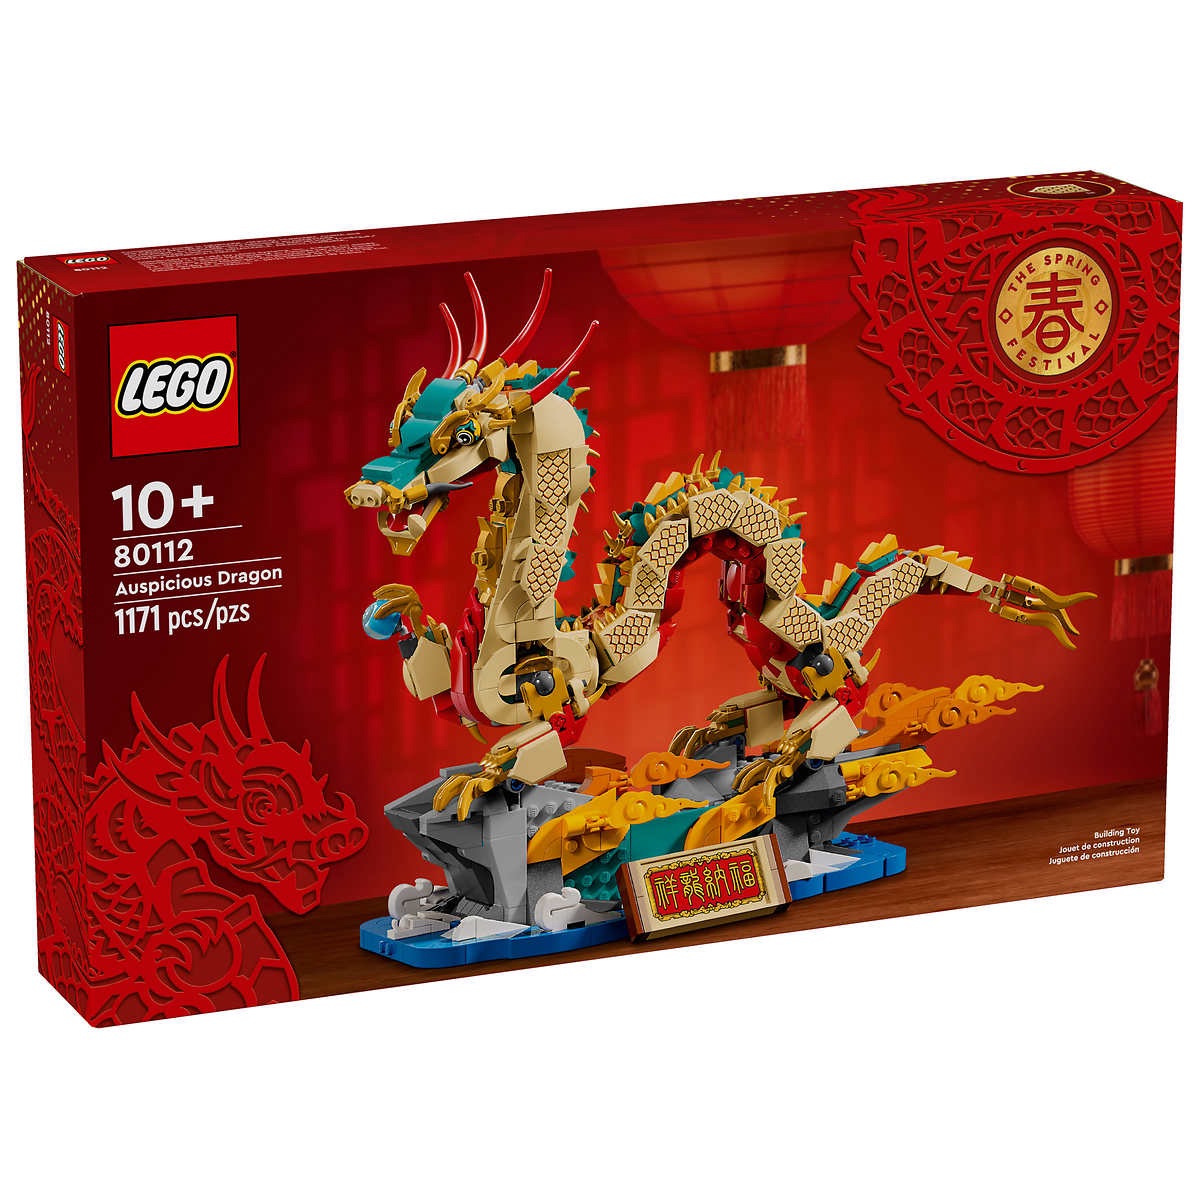 LEGO Auspicious Dragon | Costco